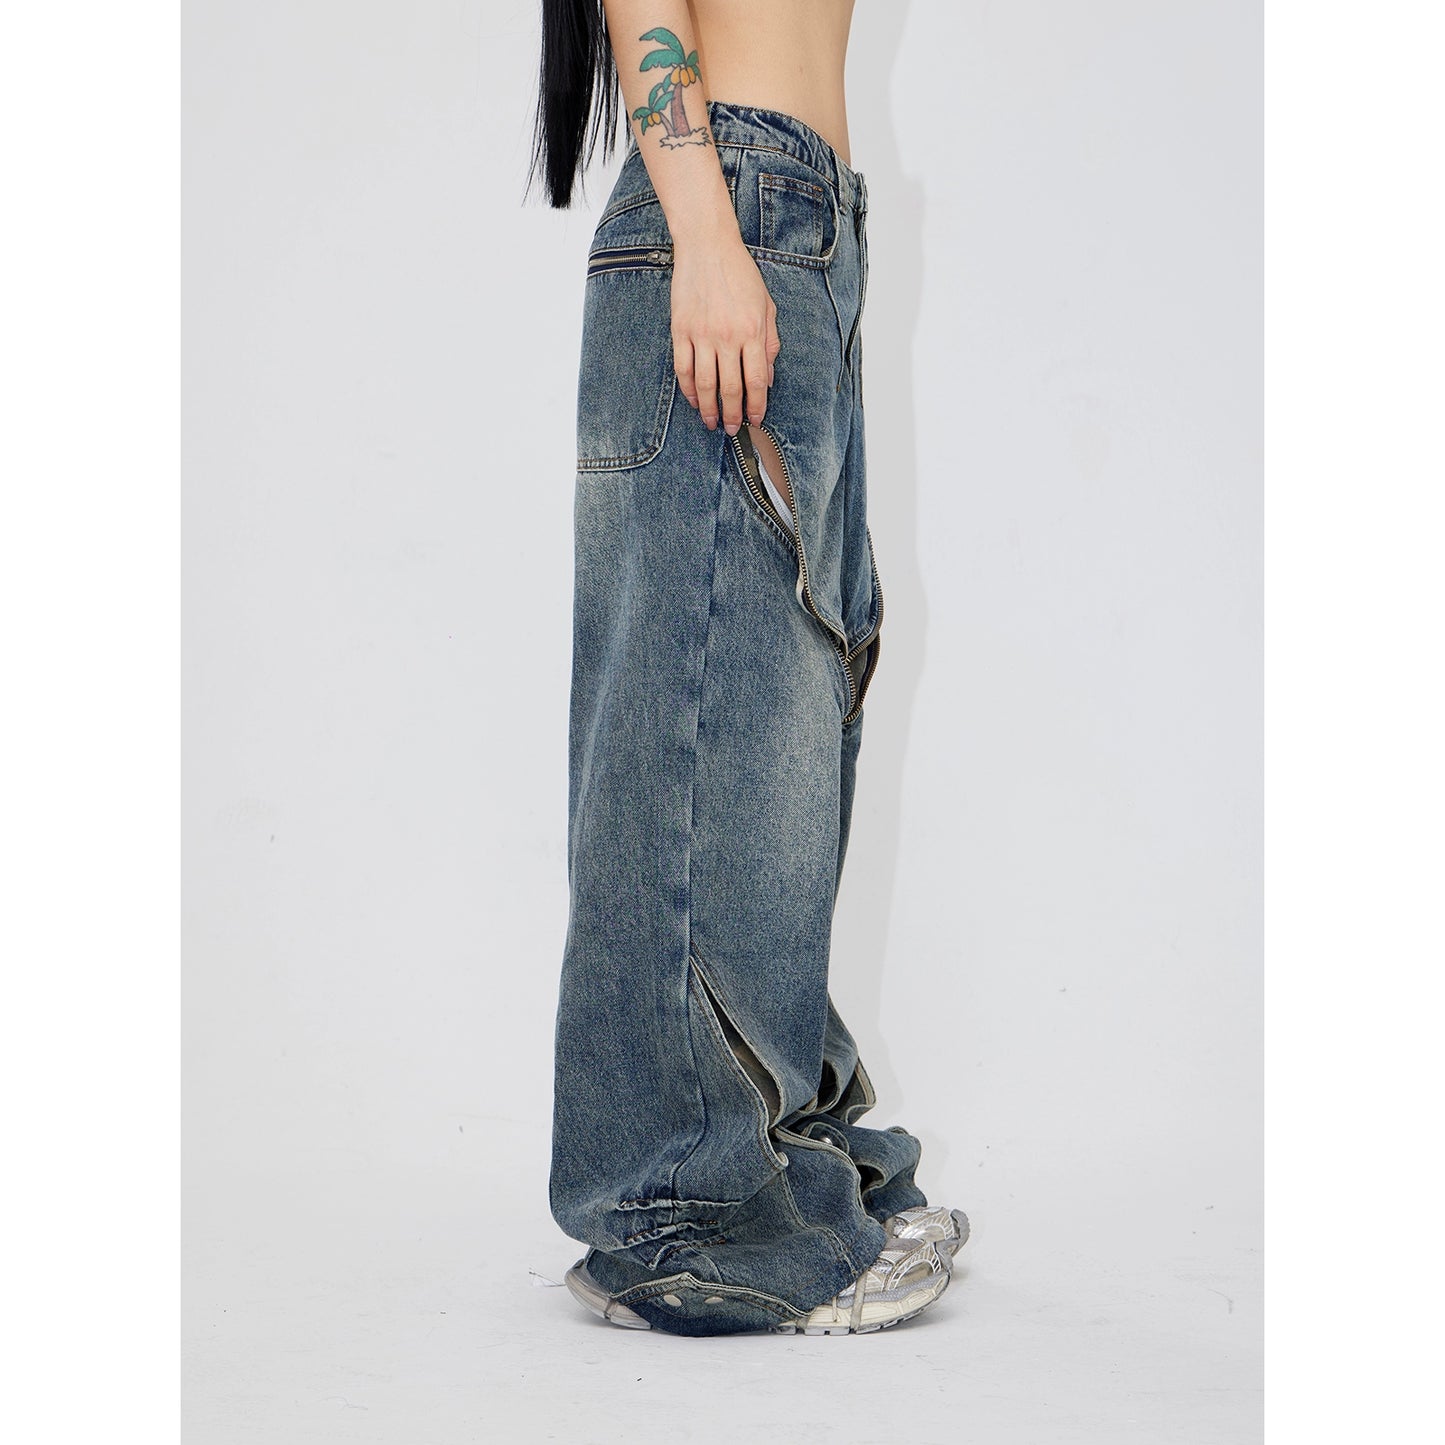 Deconstructs Hollow Out Camuflage Patchwork Jeans con diseño de nicho en angustia retro, pantalones de piernas anchas sueltas